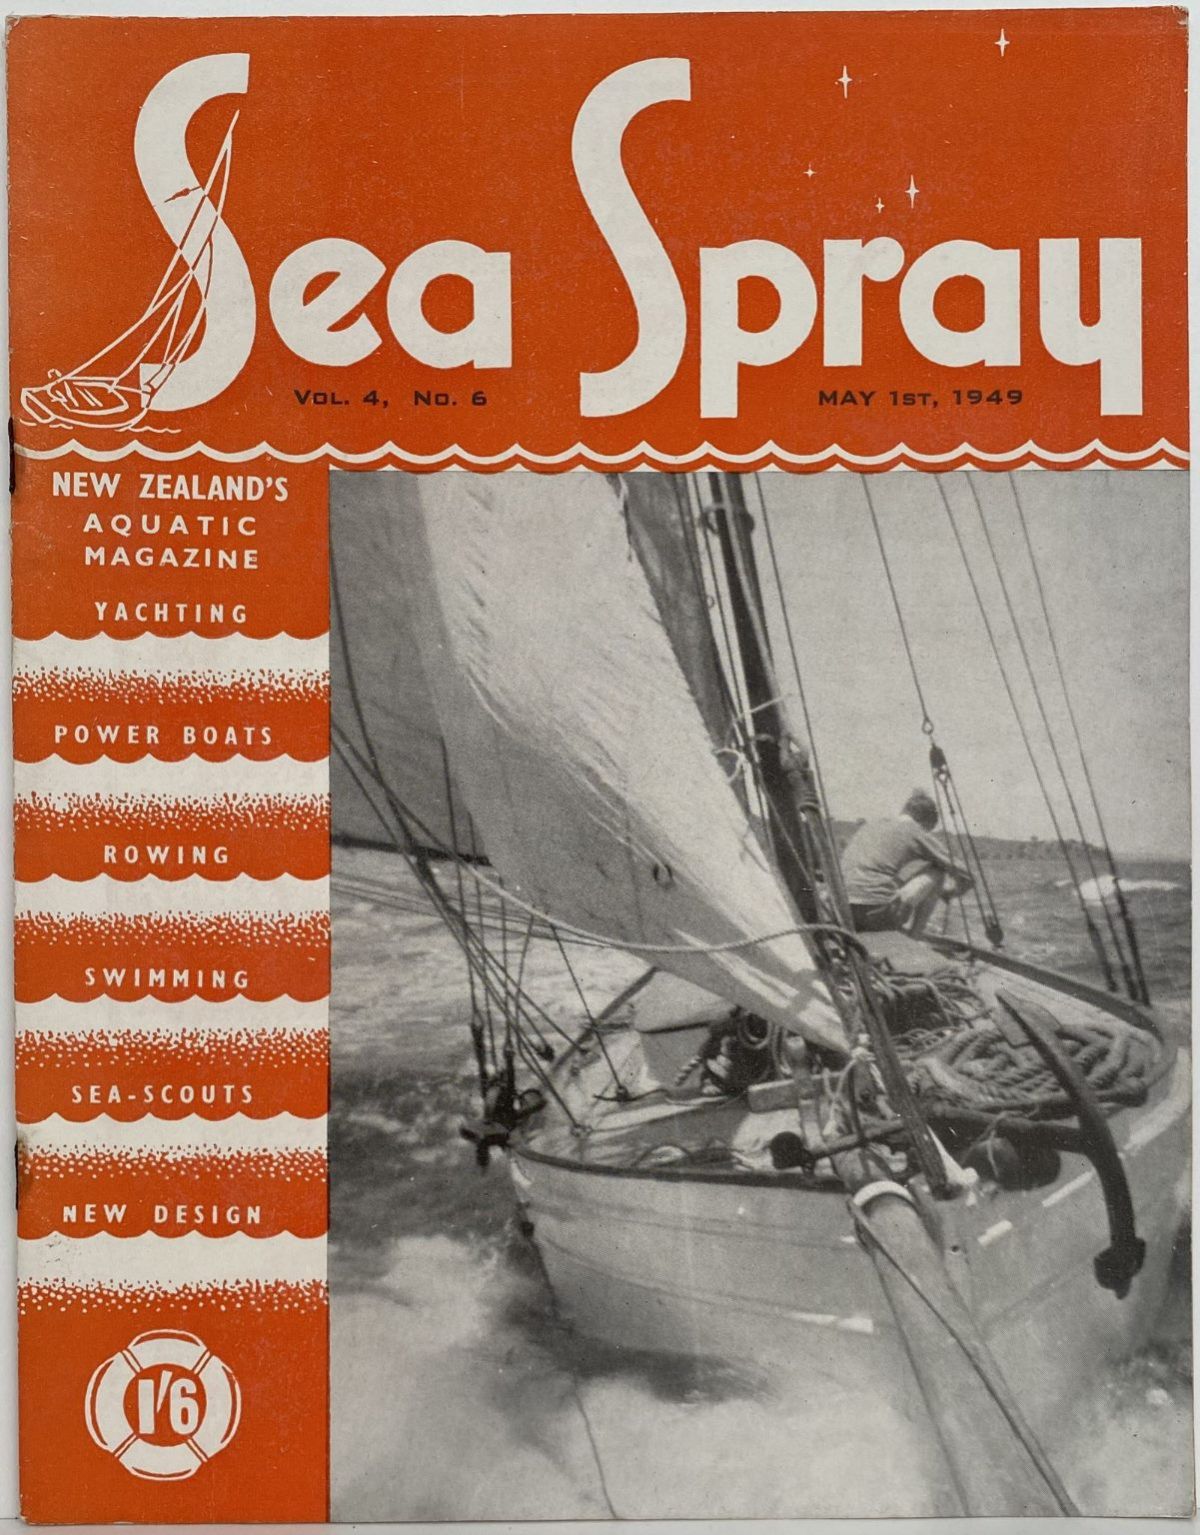 VINTAGE MAGAZINE: Sea Spray - Vol. 4, No. 6 - May 1949